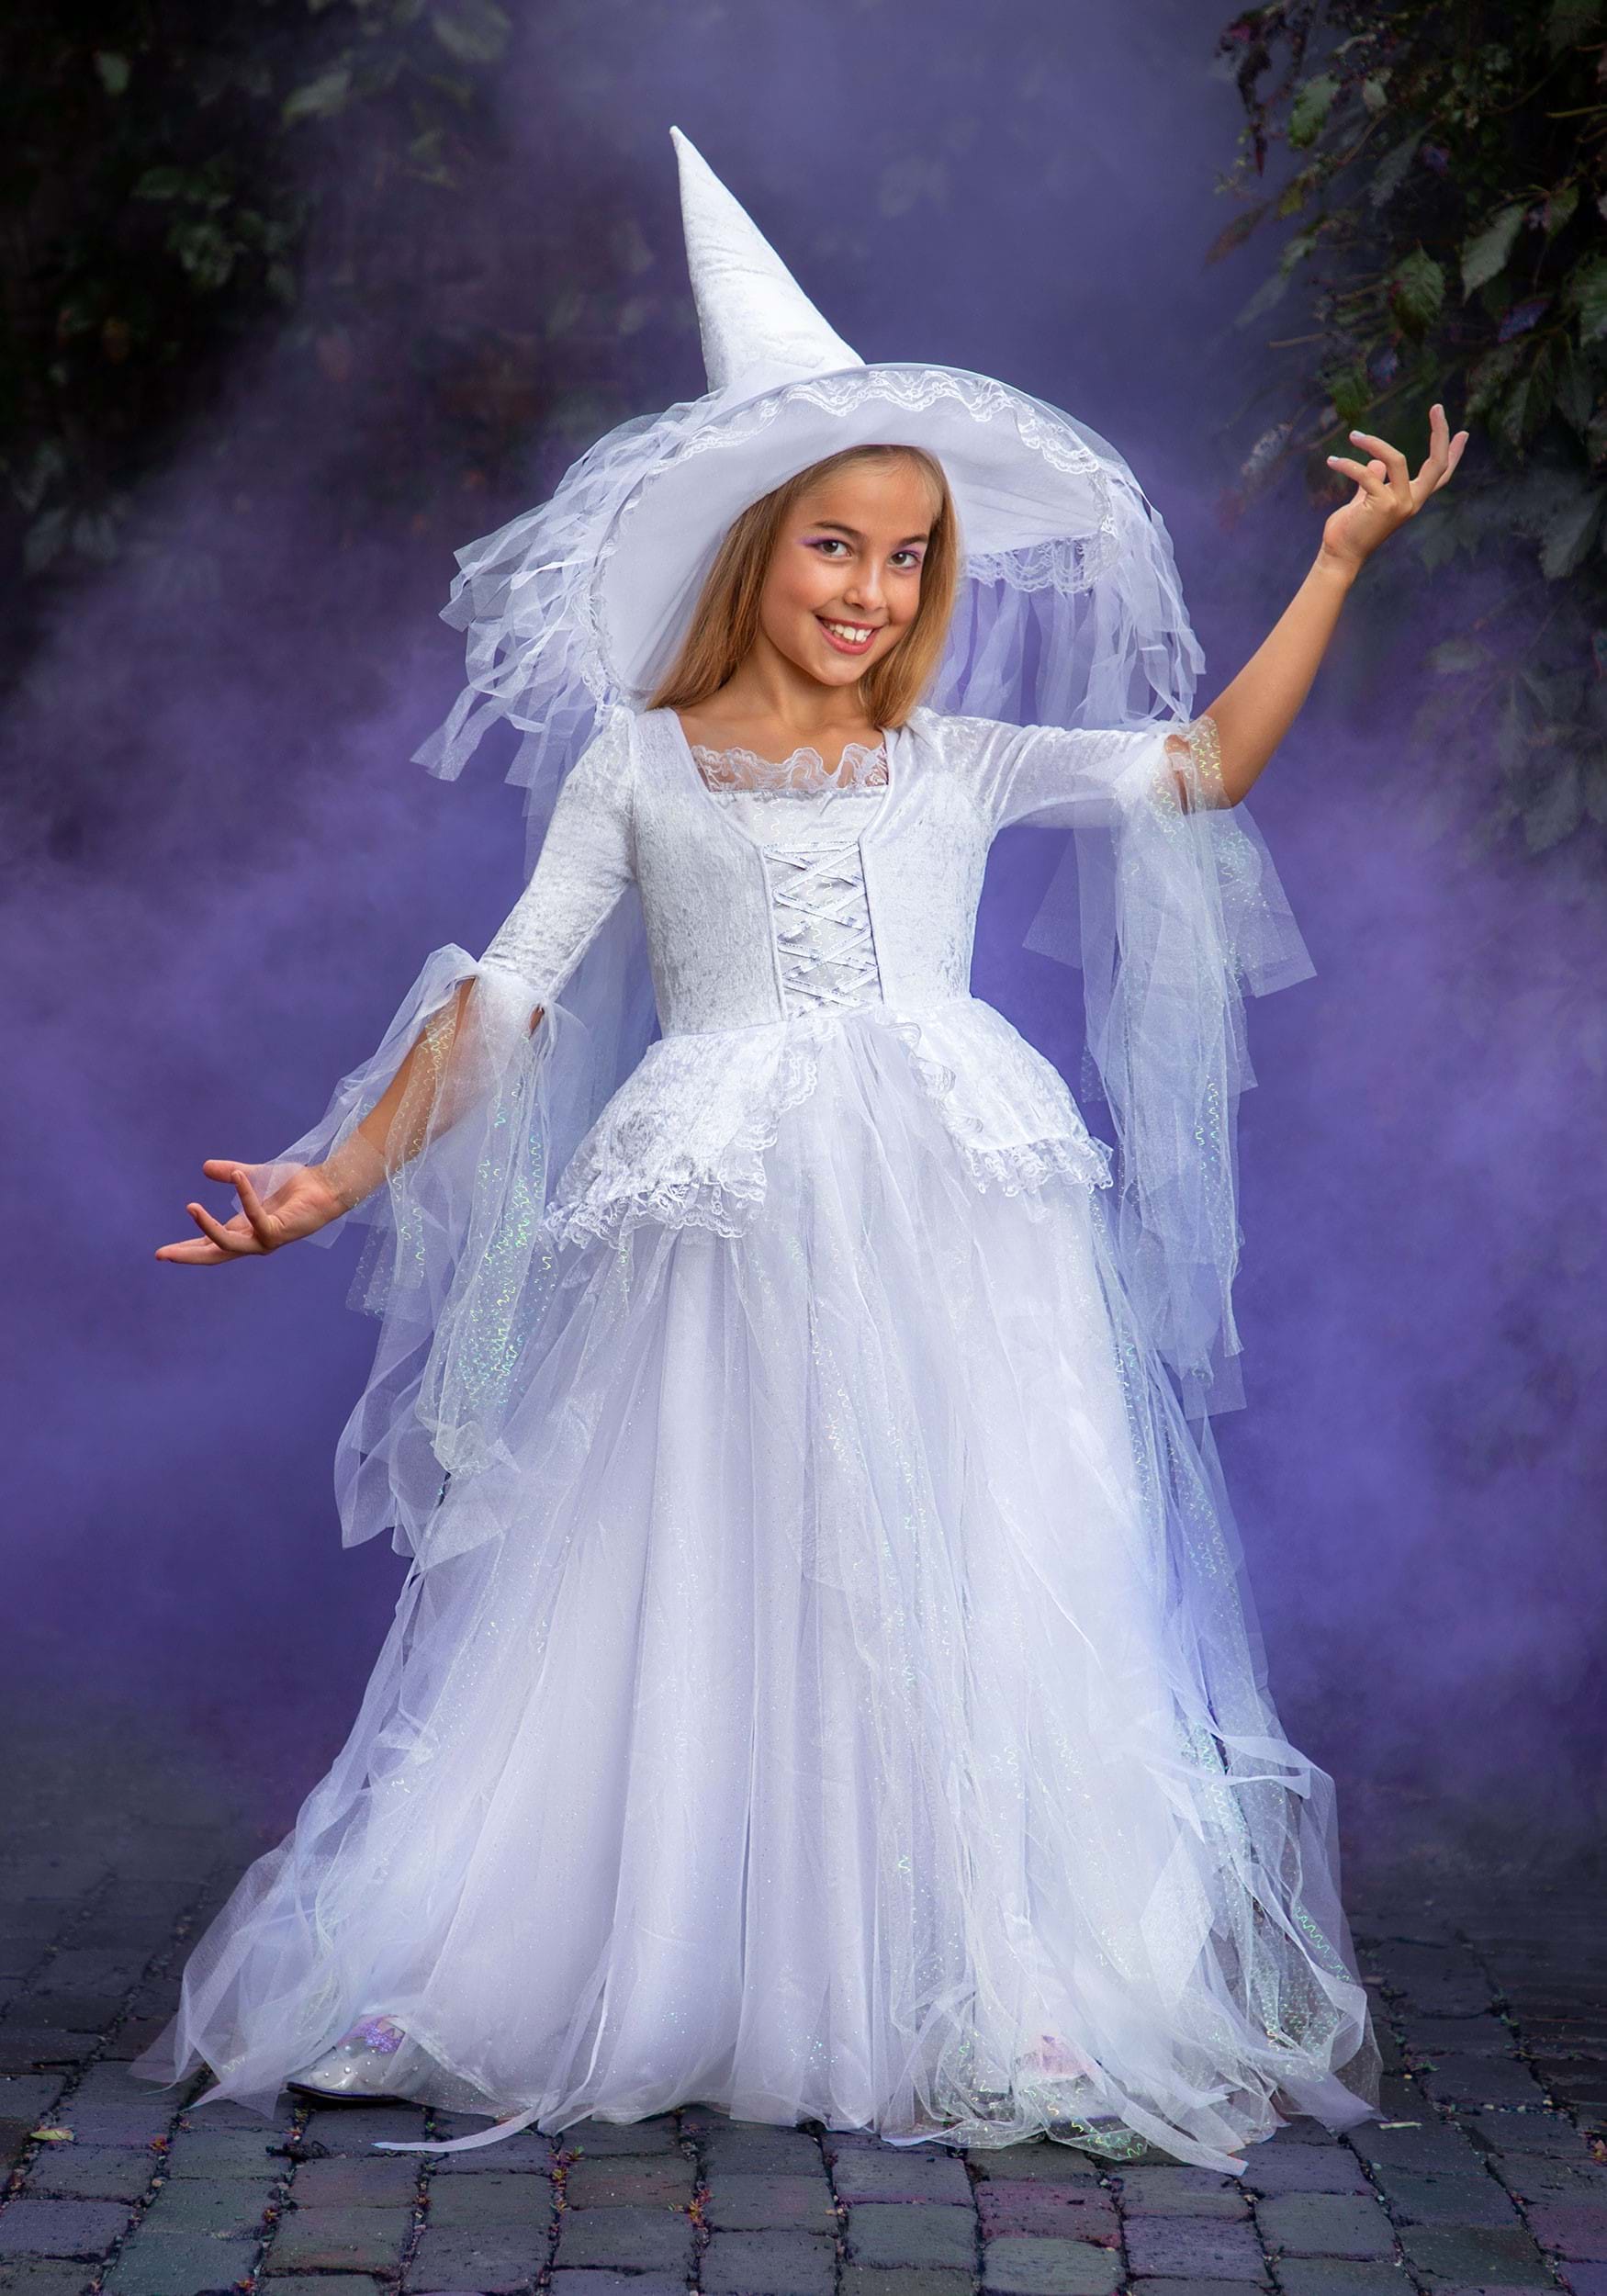 patrimonio Abolido Exclusivo Children's White Witch Costume